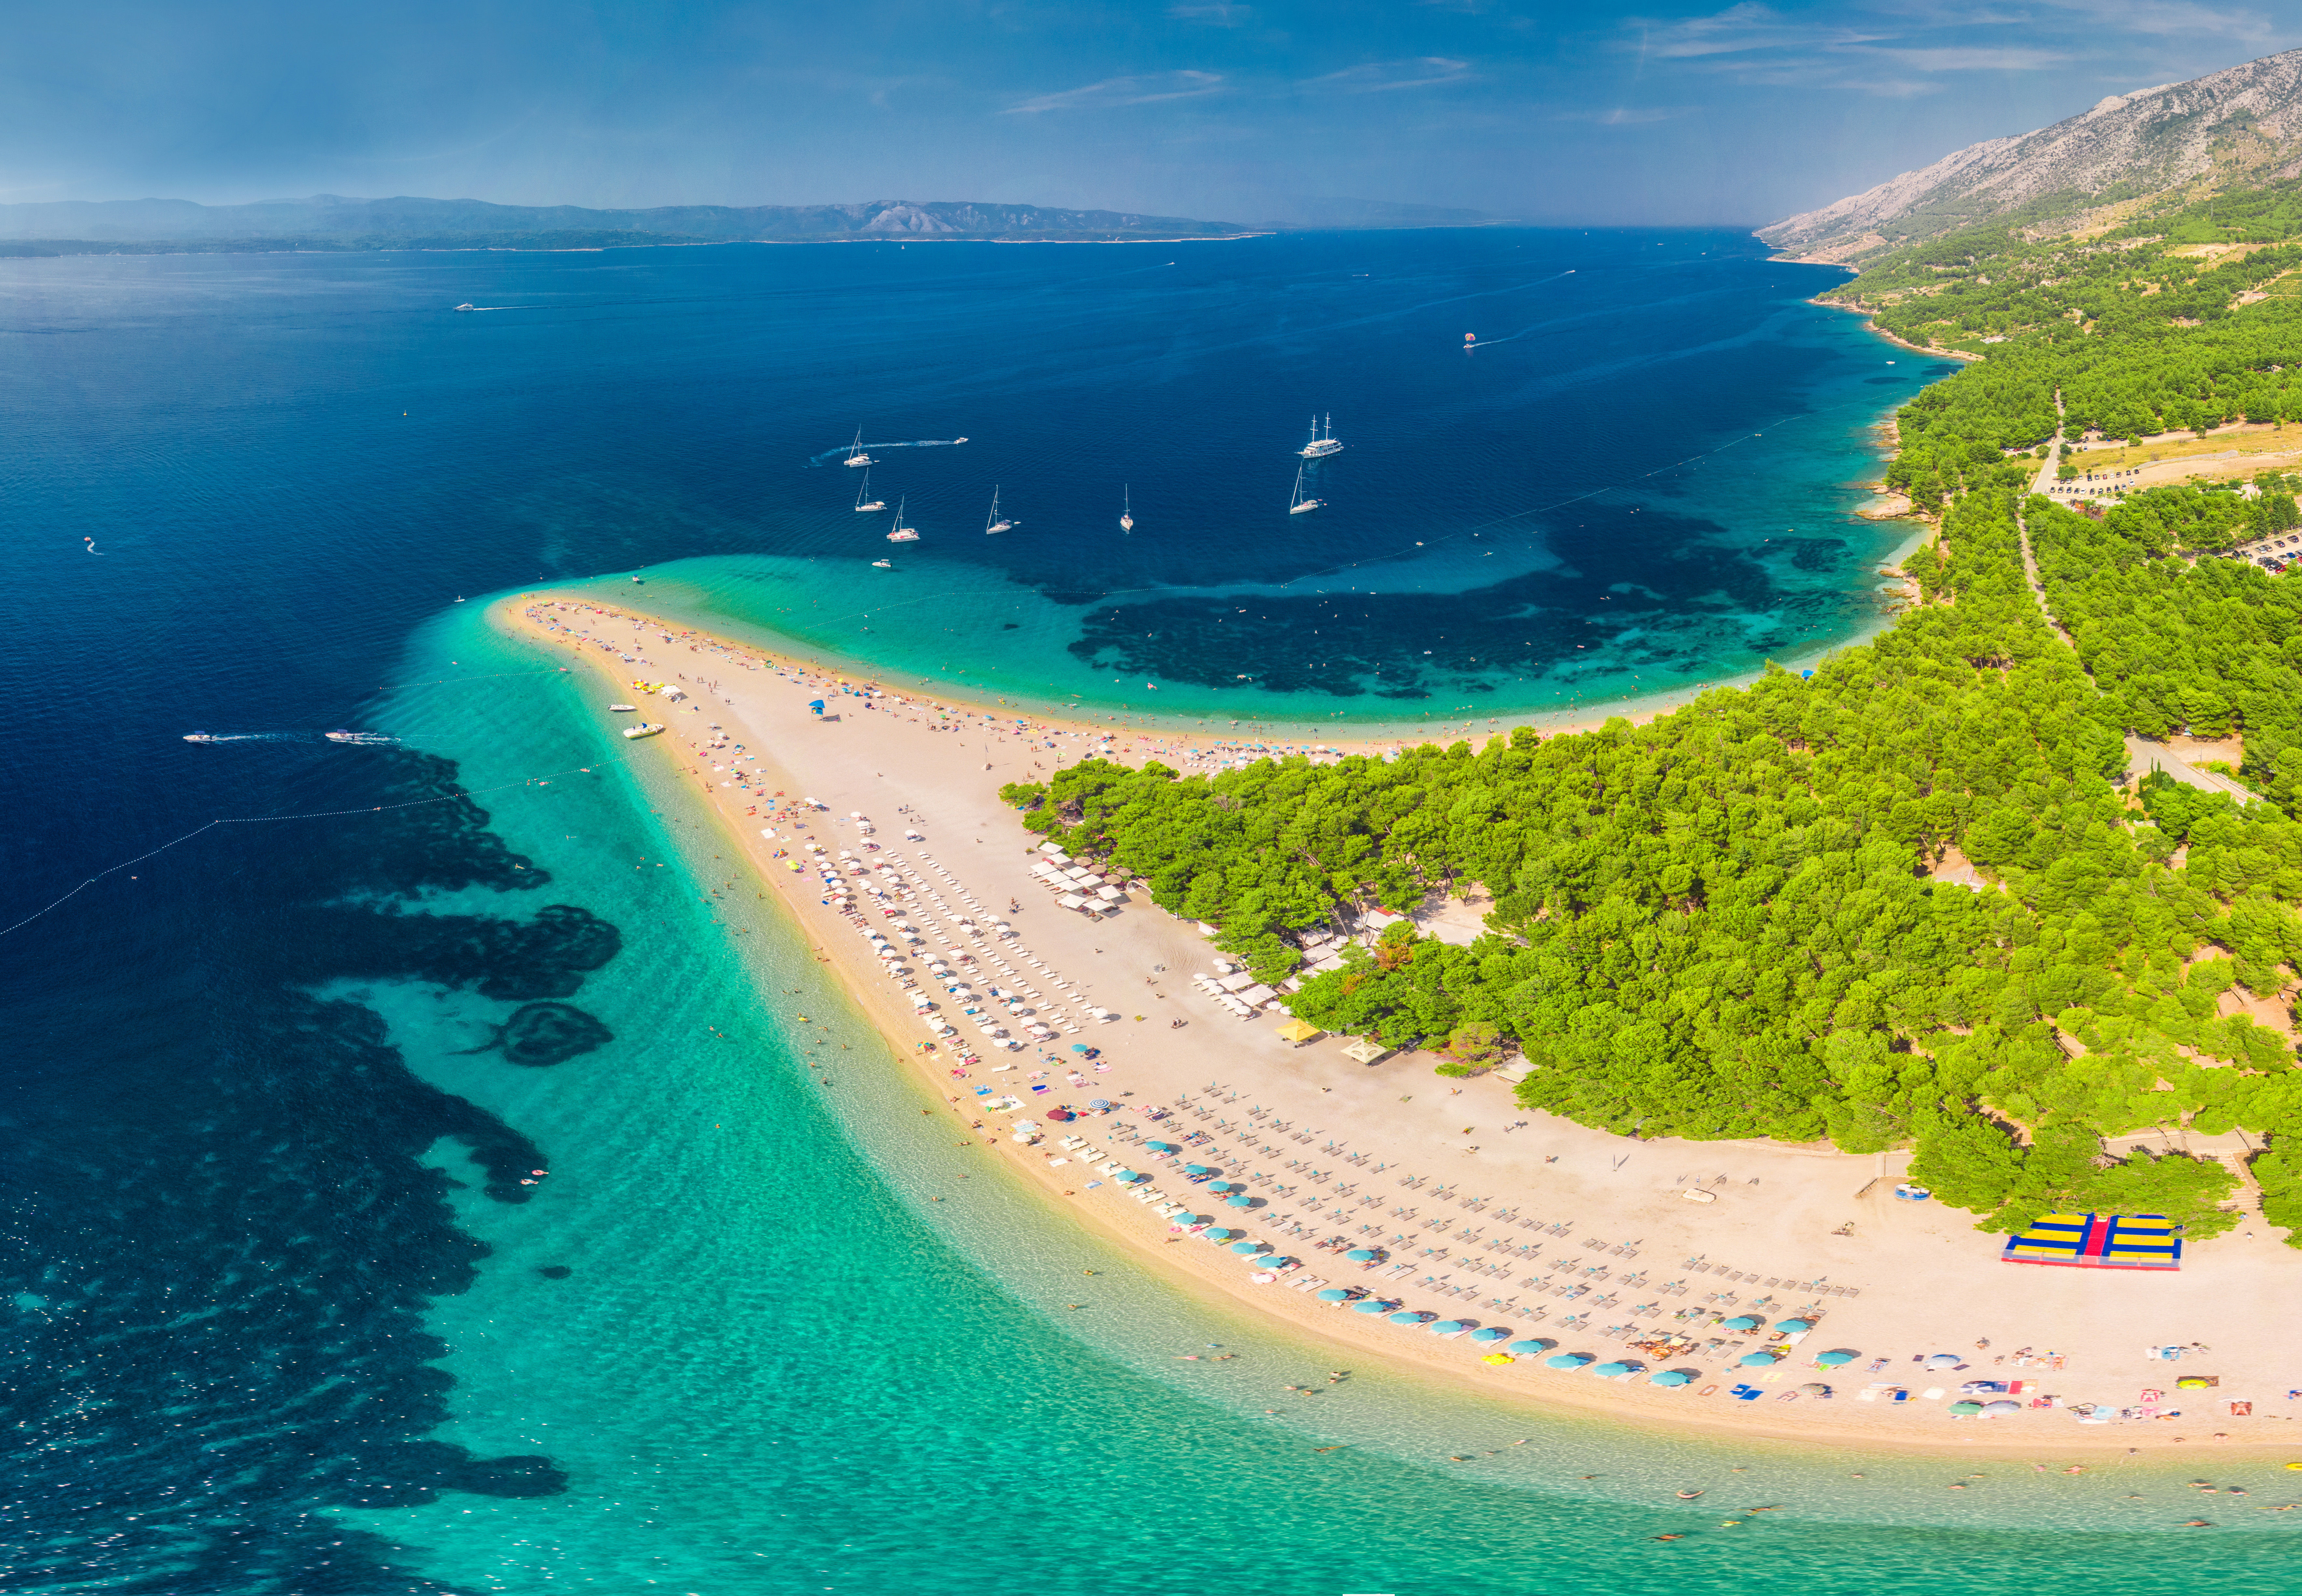 Famous Zlatni rat beach in Bol, Island Brac, Croatia